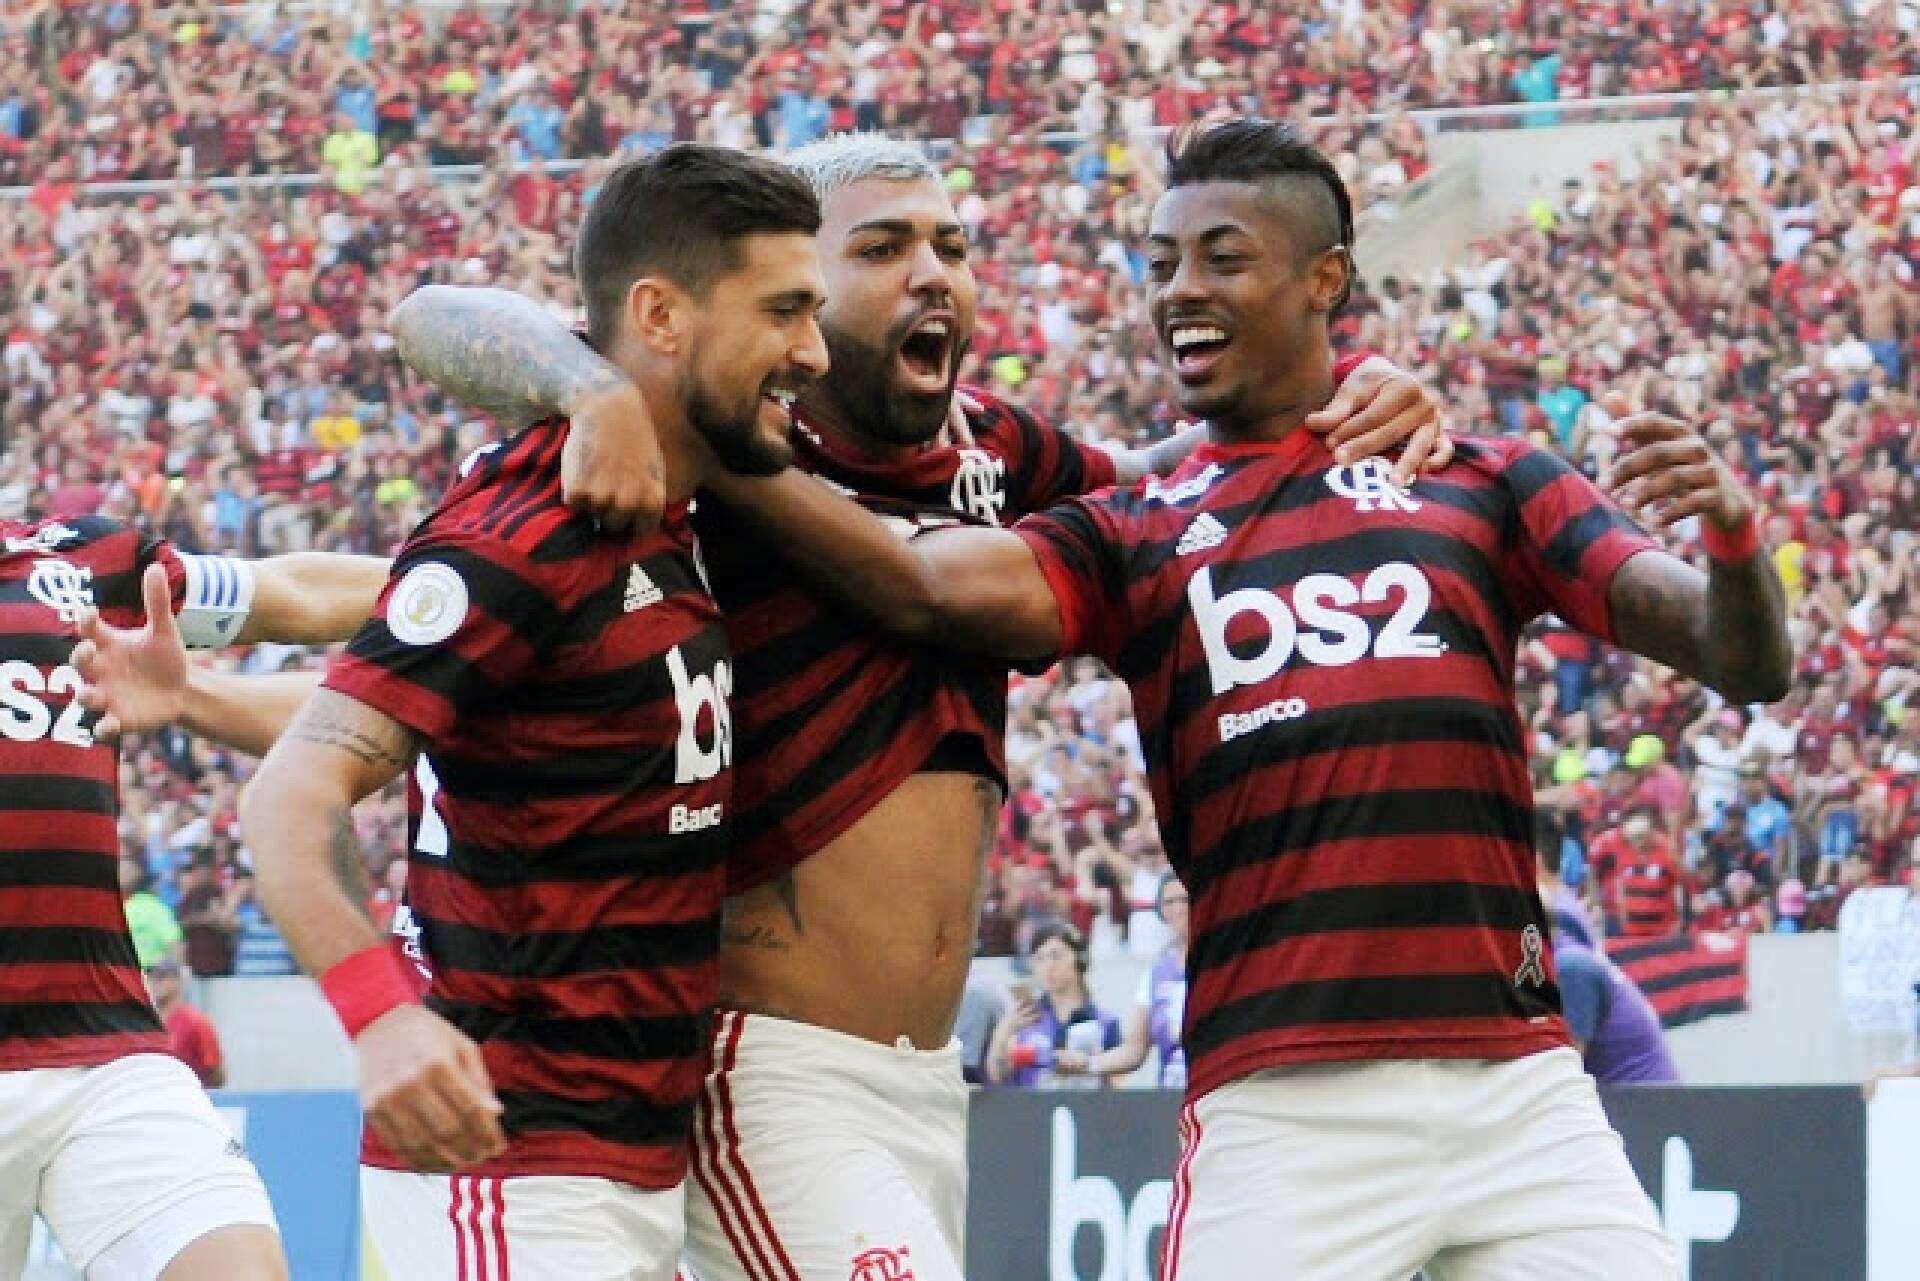 Foto: Reprodução / Twitter oficial do Flamengo